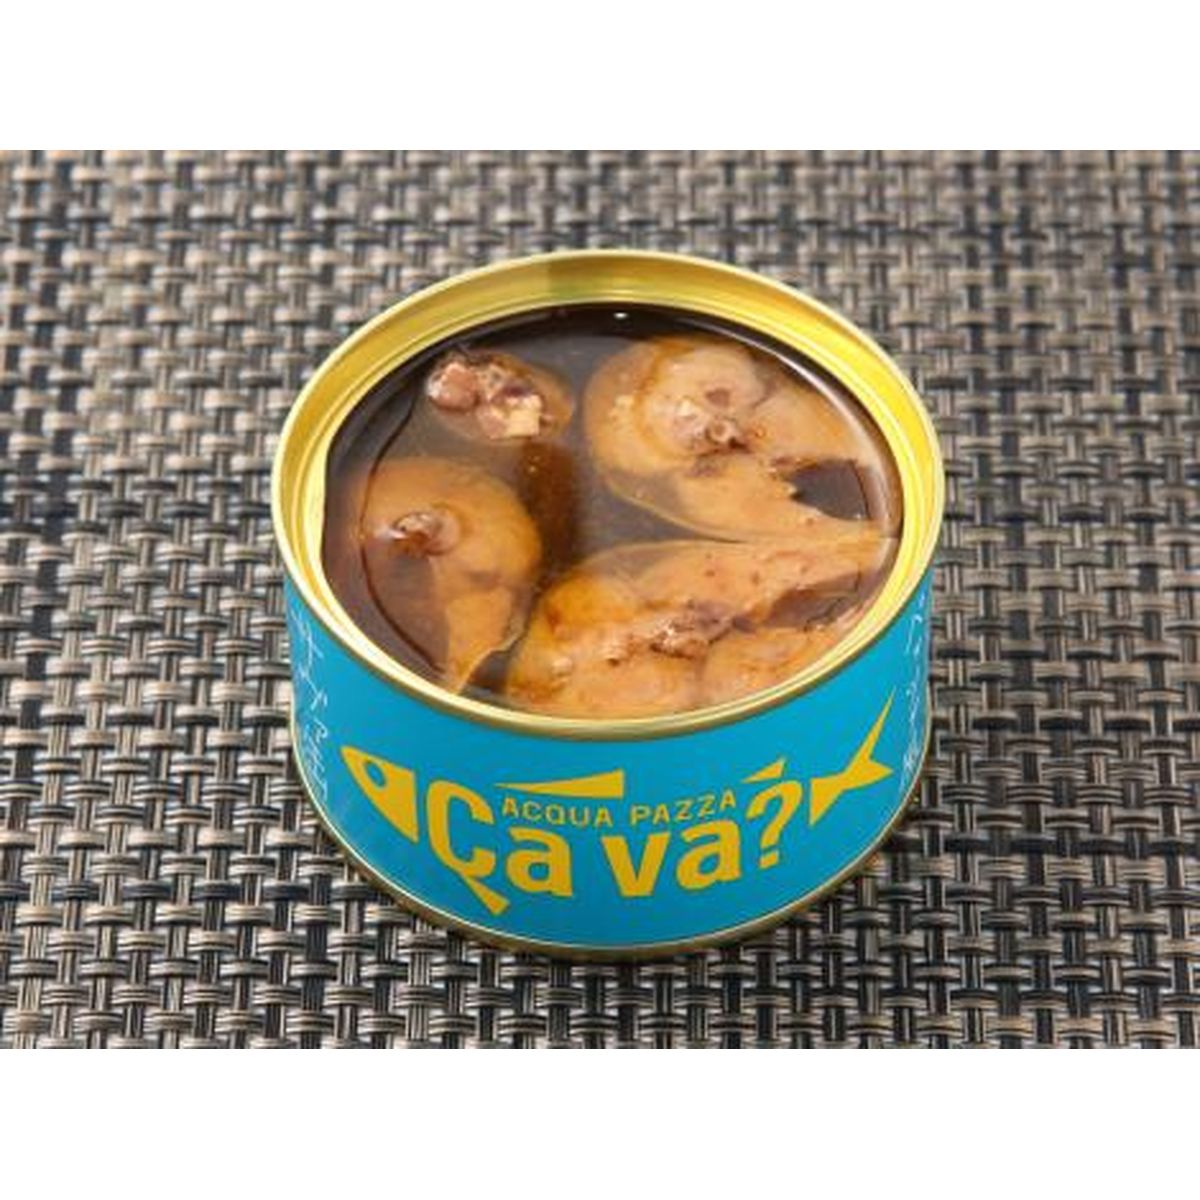 サヴァ缶バラエティセット(サヴァ缶5種・パスタソース2種・レトルトカレー1種)